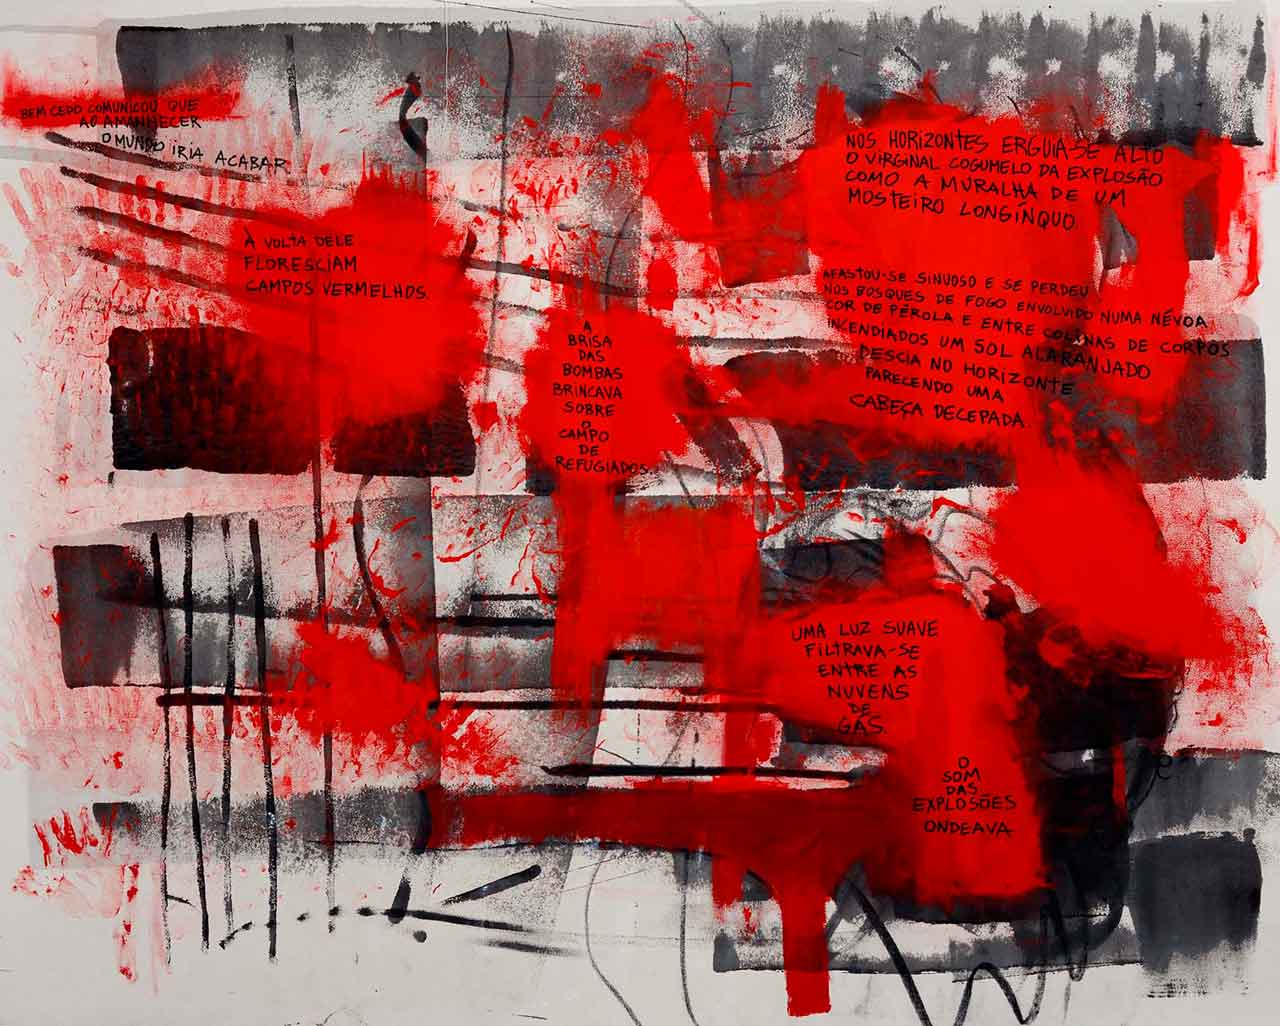 Pintura abstrata em preto e vermelho onde lê-se frases sobre um momento tenso como: "bem cedo comunicou que ao amanhecer o mundo iria acabar"